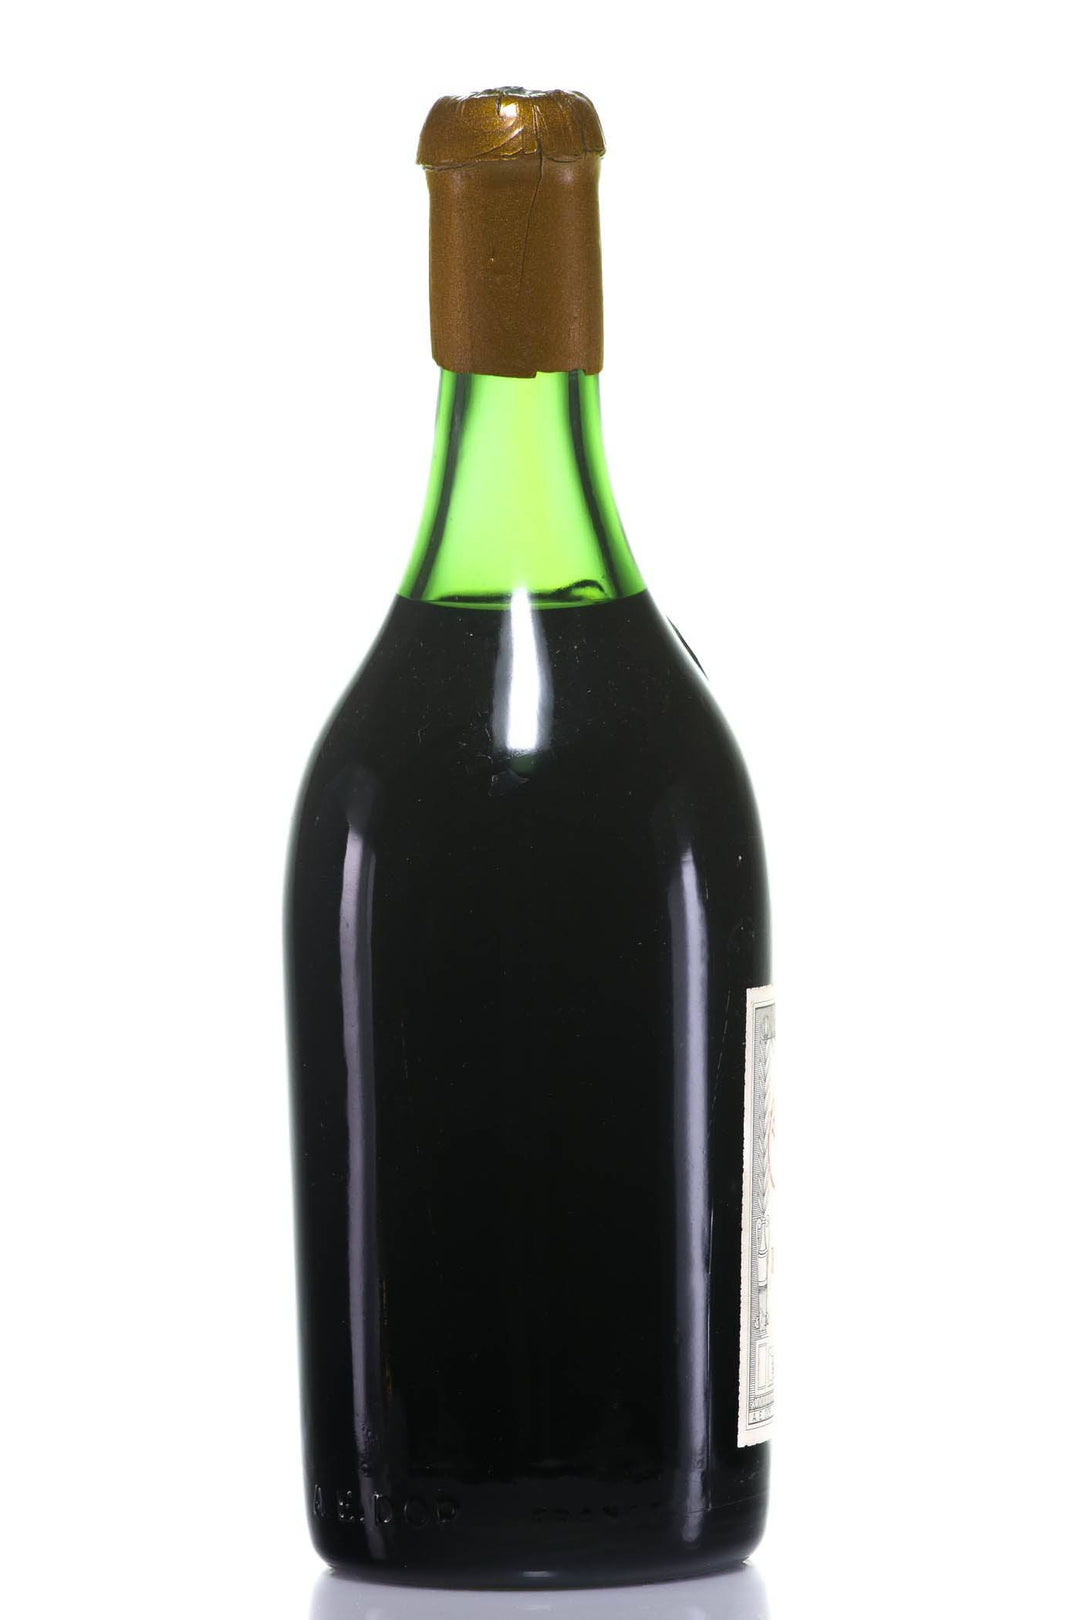 A.E. Dor Vieille Reserve No. 5 1840 Cognac (Grande Champagne) - Rue Pinard